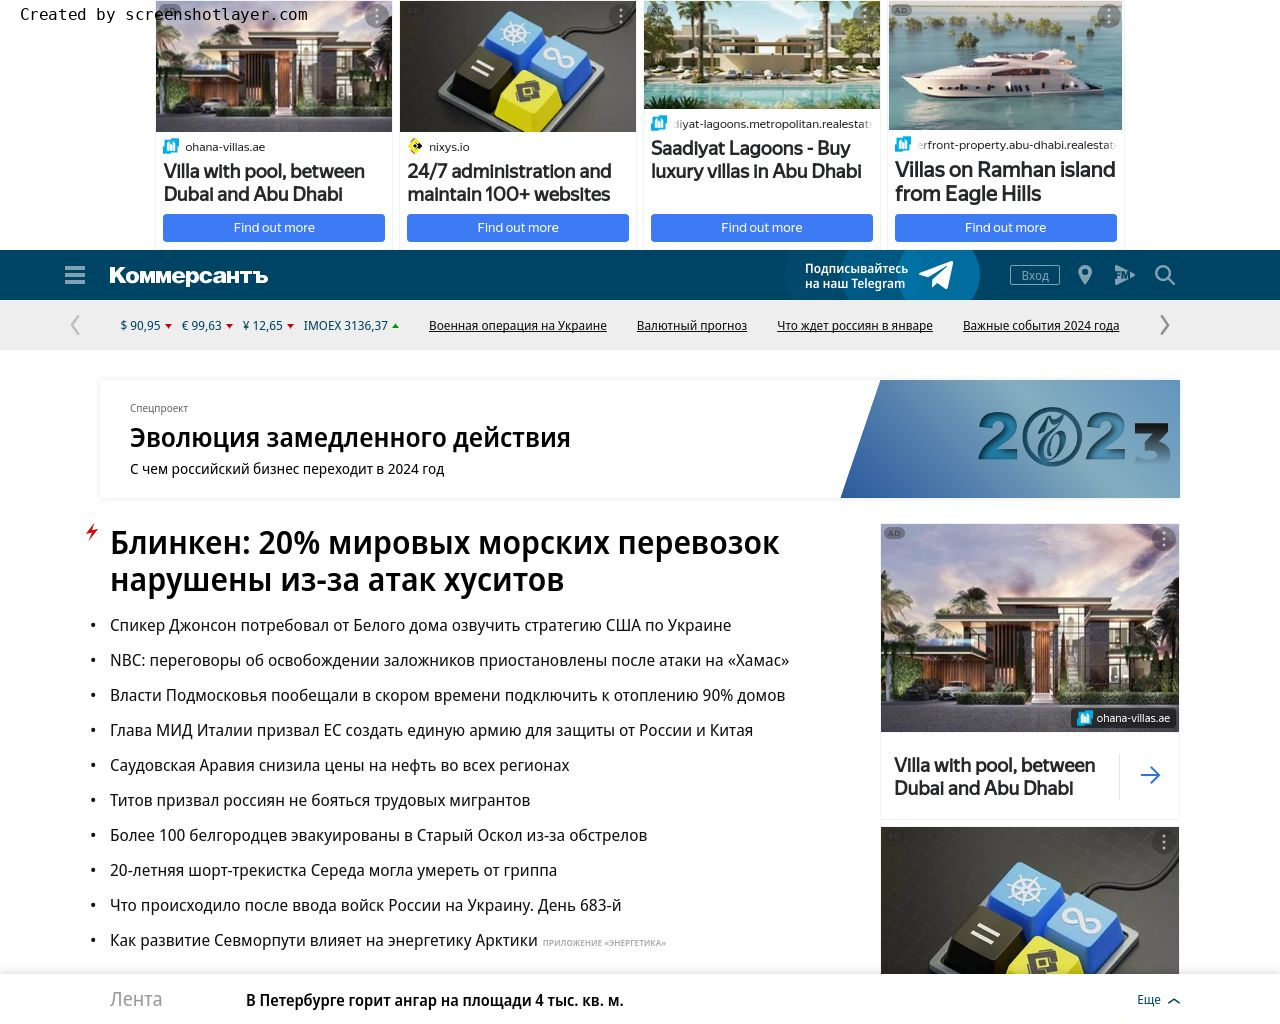 Изображение сайта kommersant.ru в разрешении 1280x1024